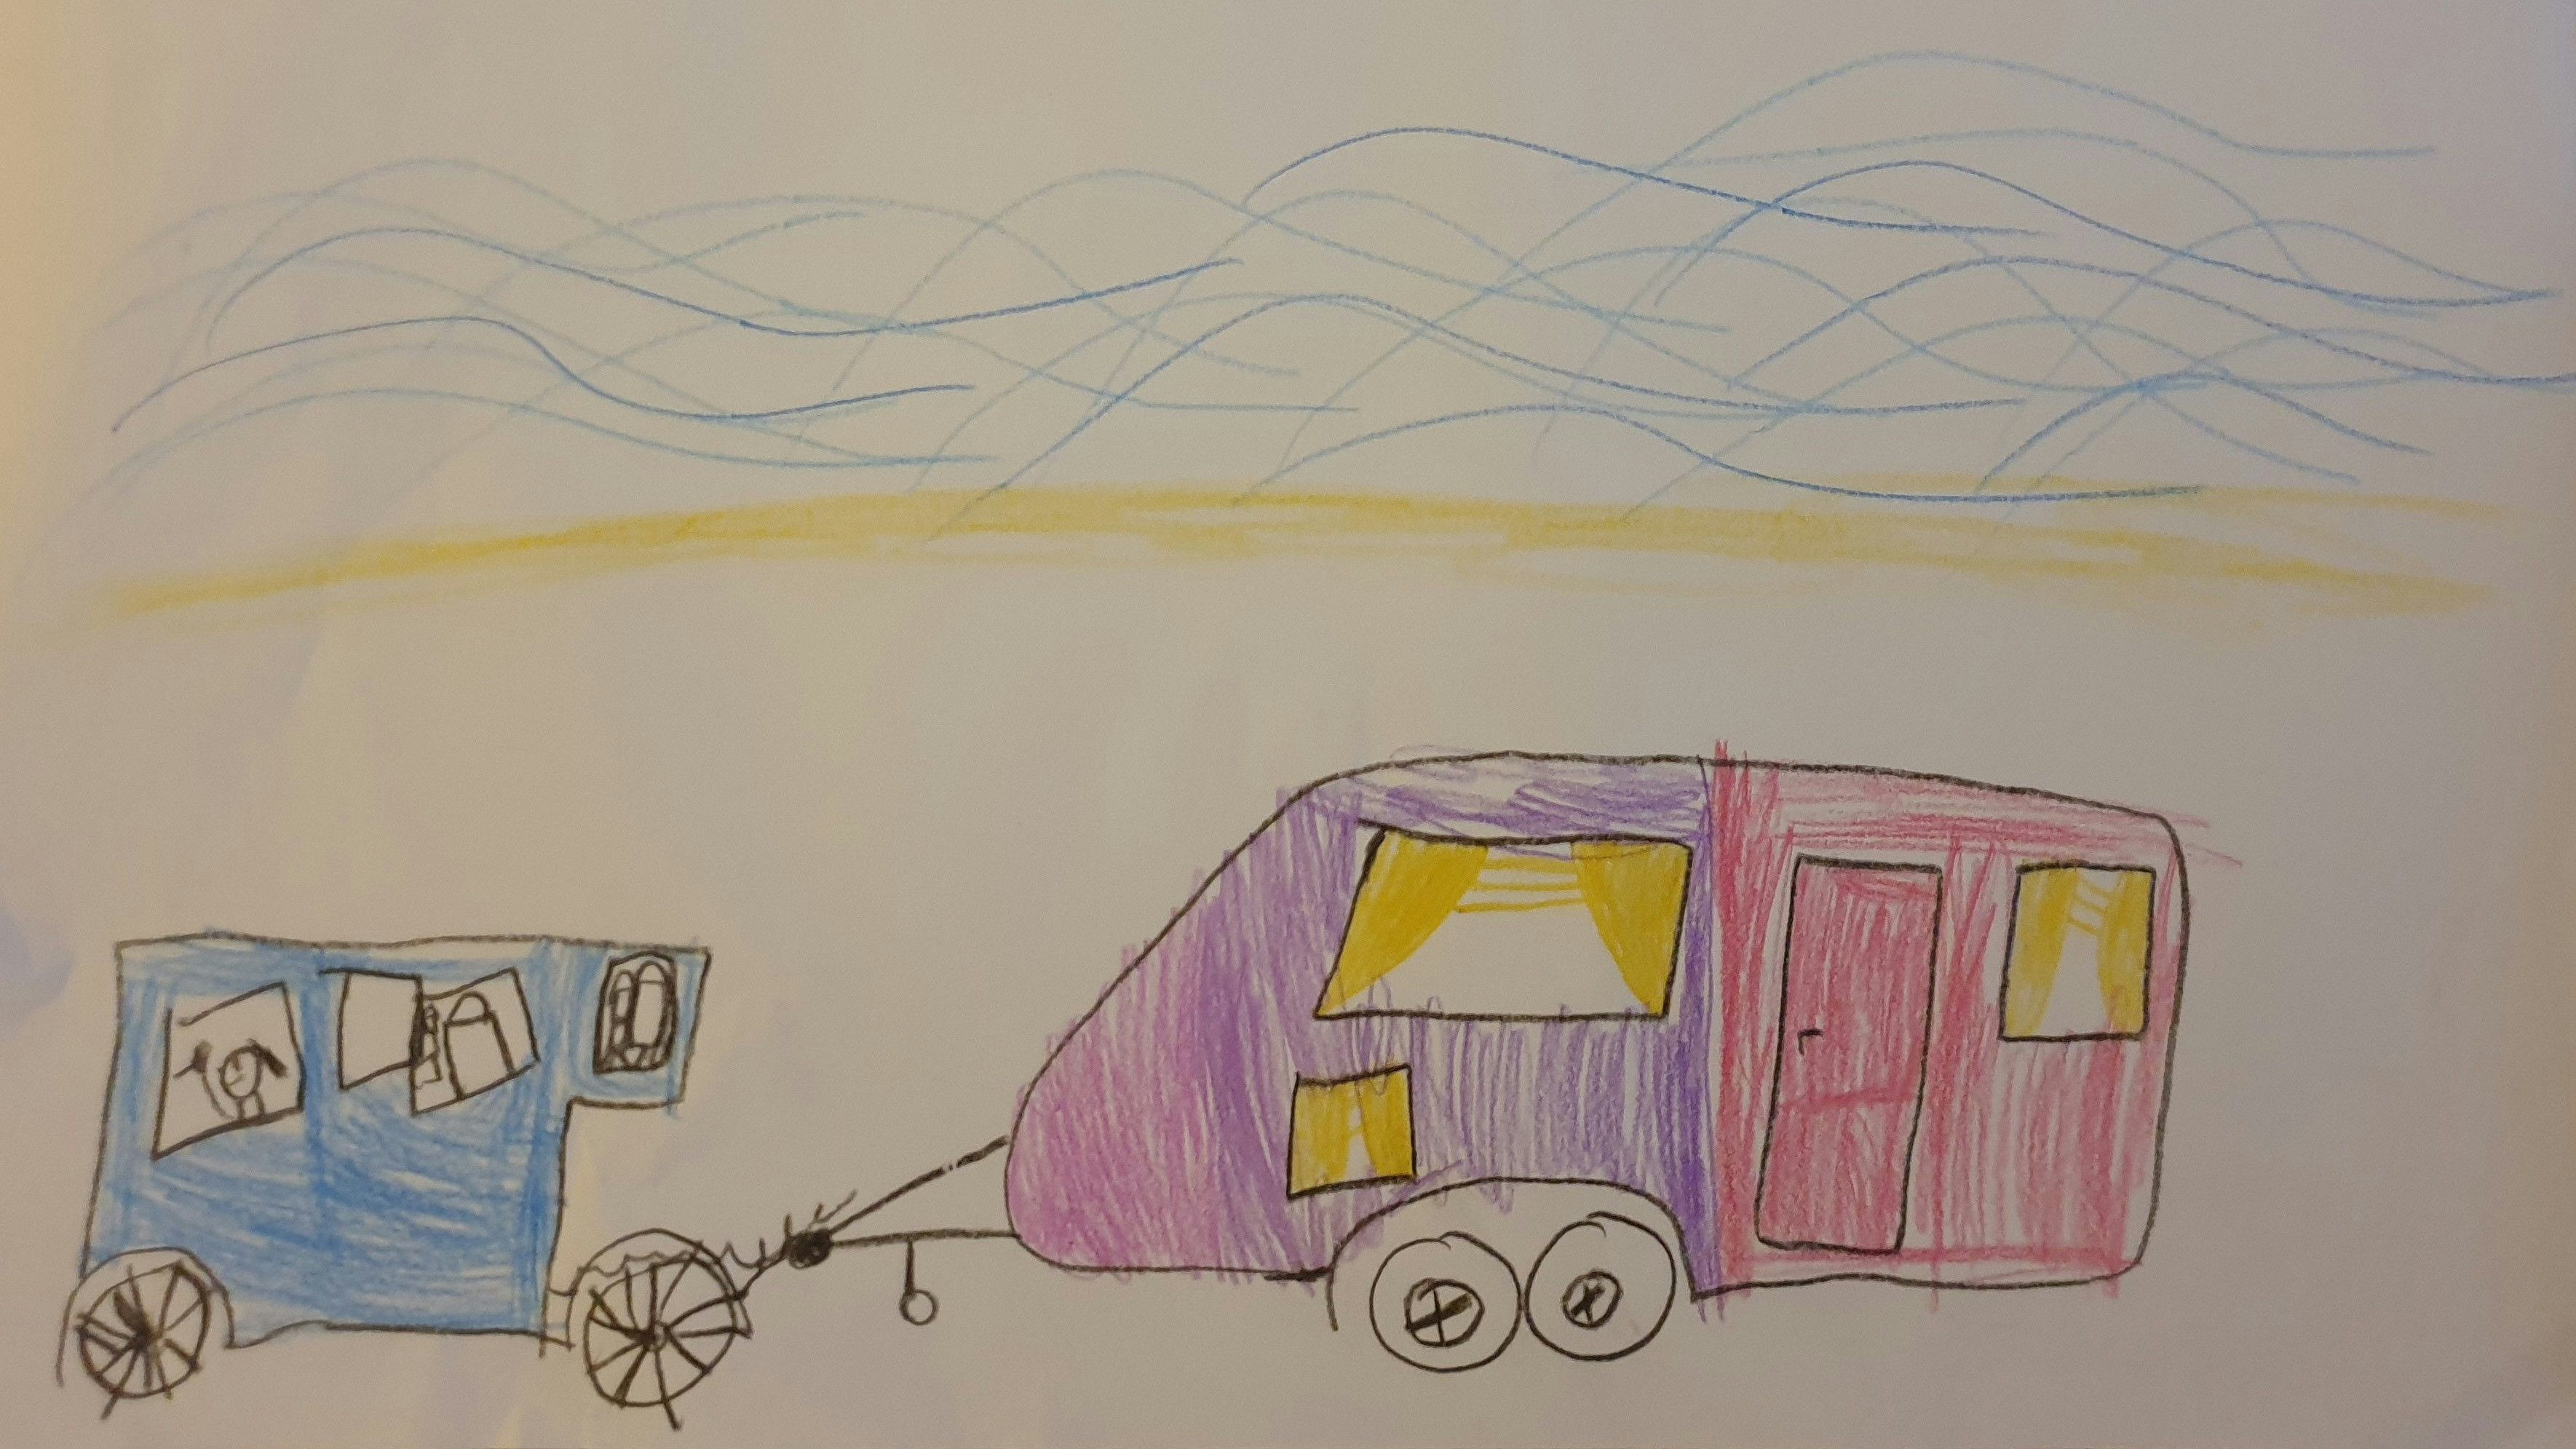 Traumurlaub am Meer: Theresa Schwienhorst ist 5 Jahre und wohnt in Cloppenburg. Theresa hat ihren Traumurlaub gemalt. Sie möchte mit dem Wohnwagen ans Meer fahren. Foto: Schwienhorst